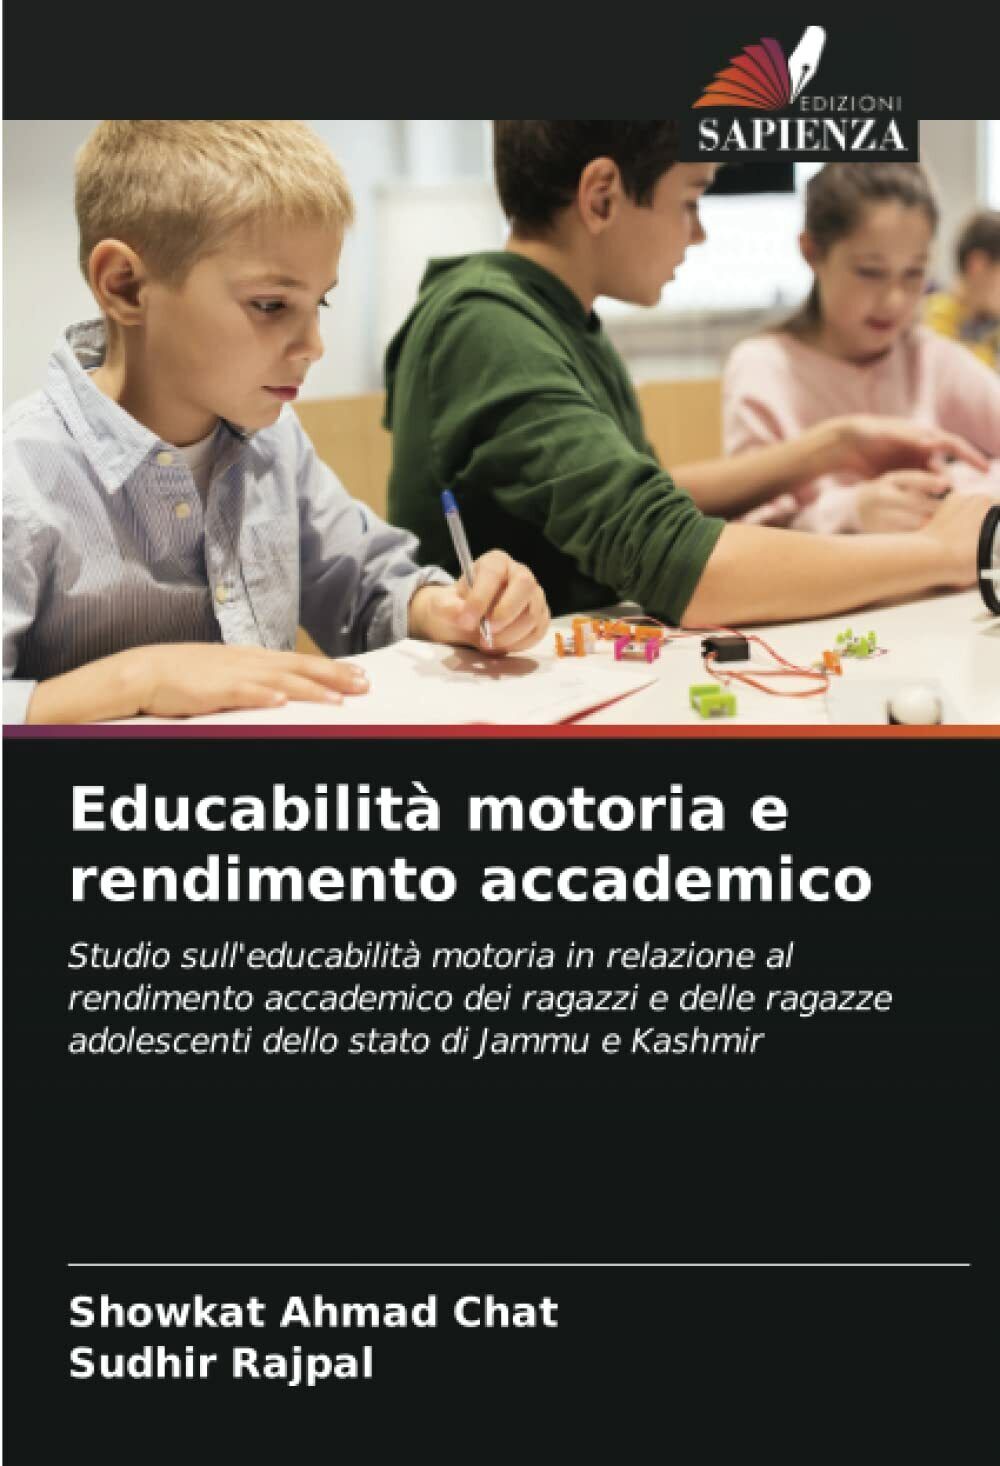 Educabilit? motoria e rendimento accademico - Edizioni Sapienza, 2021